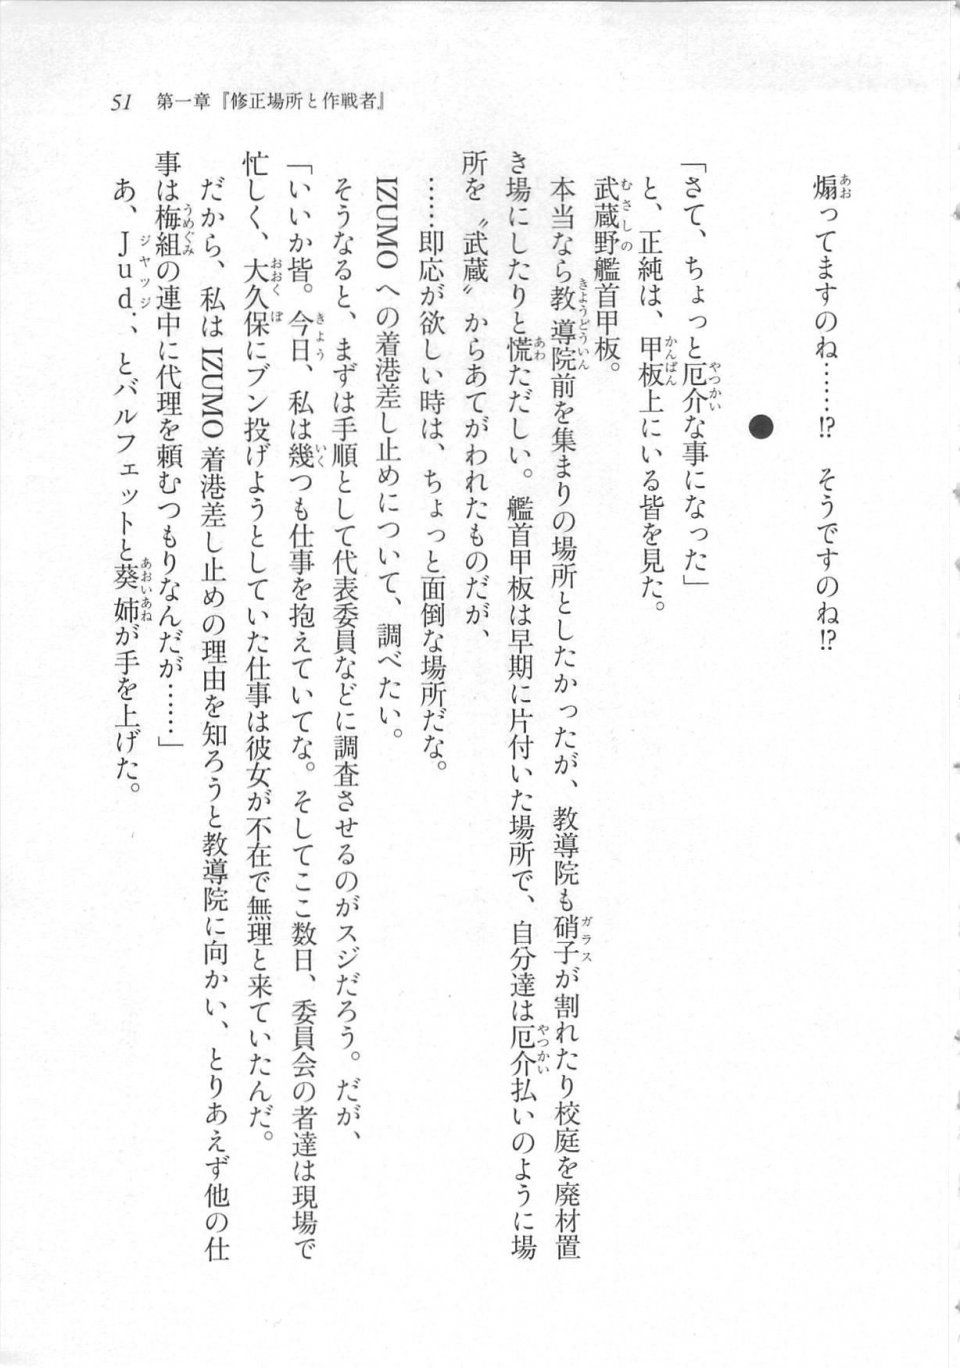 Kyoukai Senjou no Horizon LN Sidestory Vol 3 - Photo #55